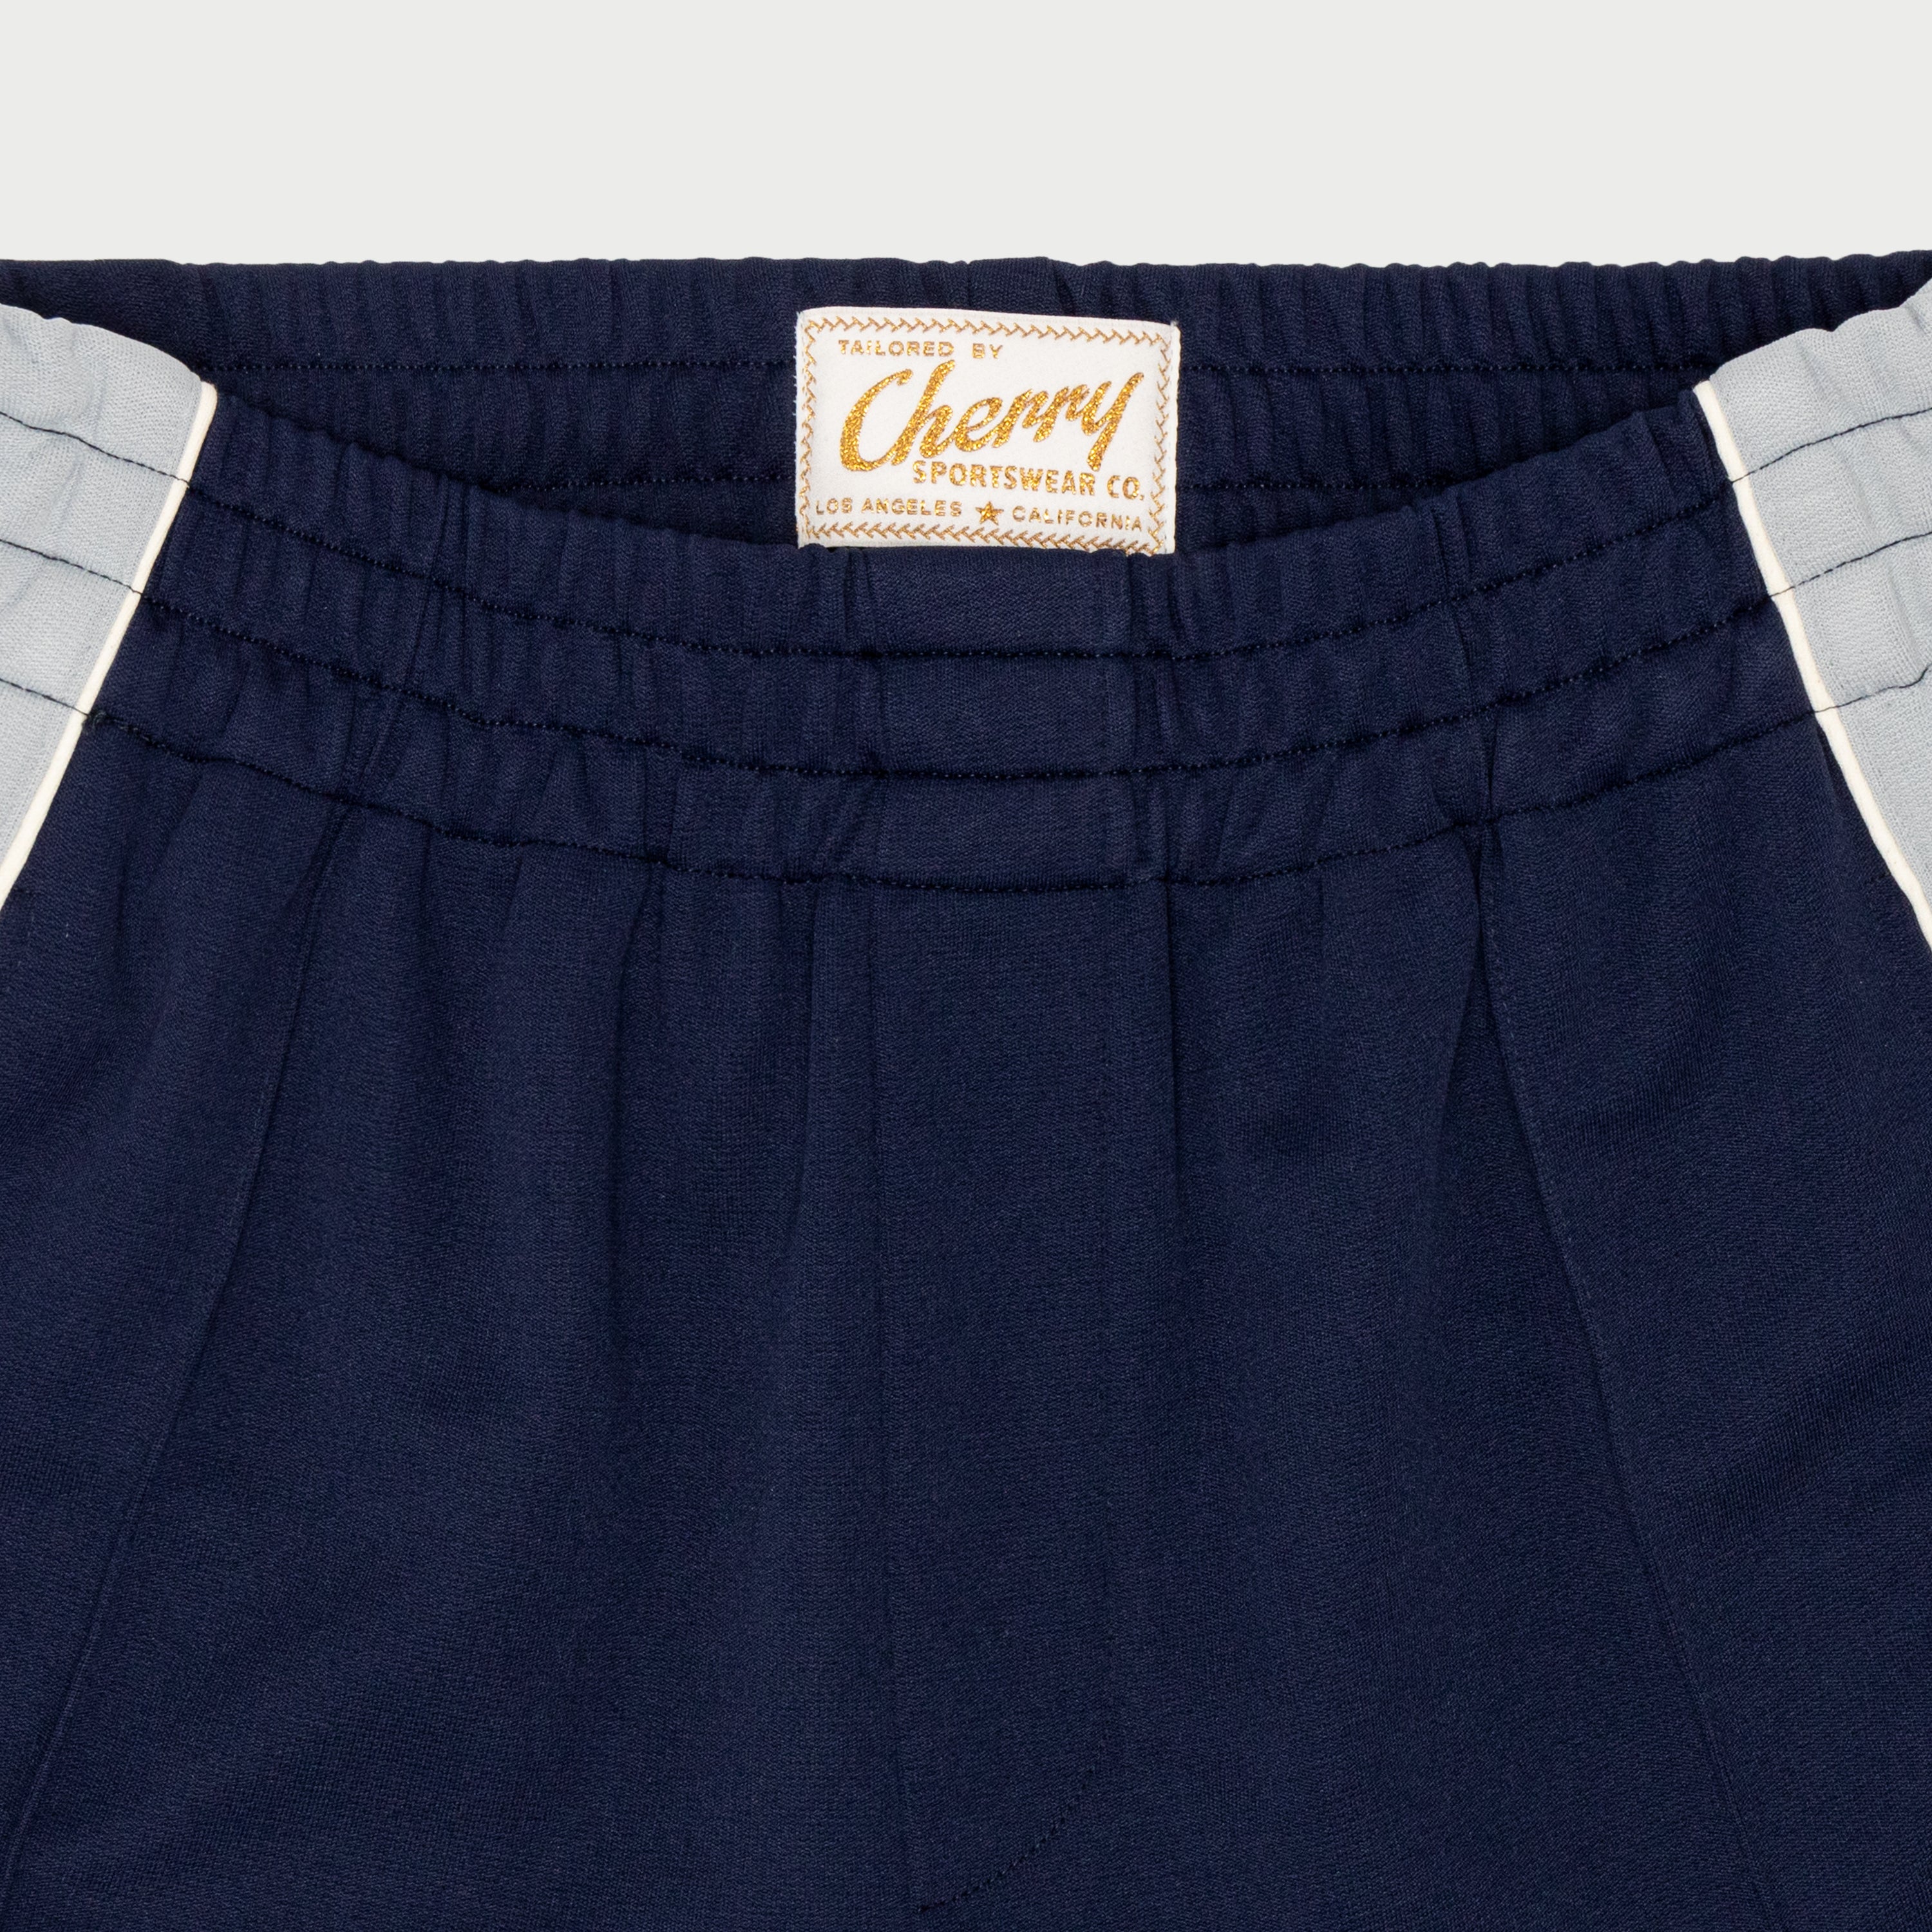 Studded Shorts (Navy)